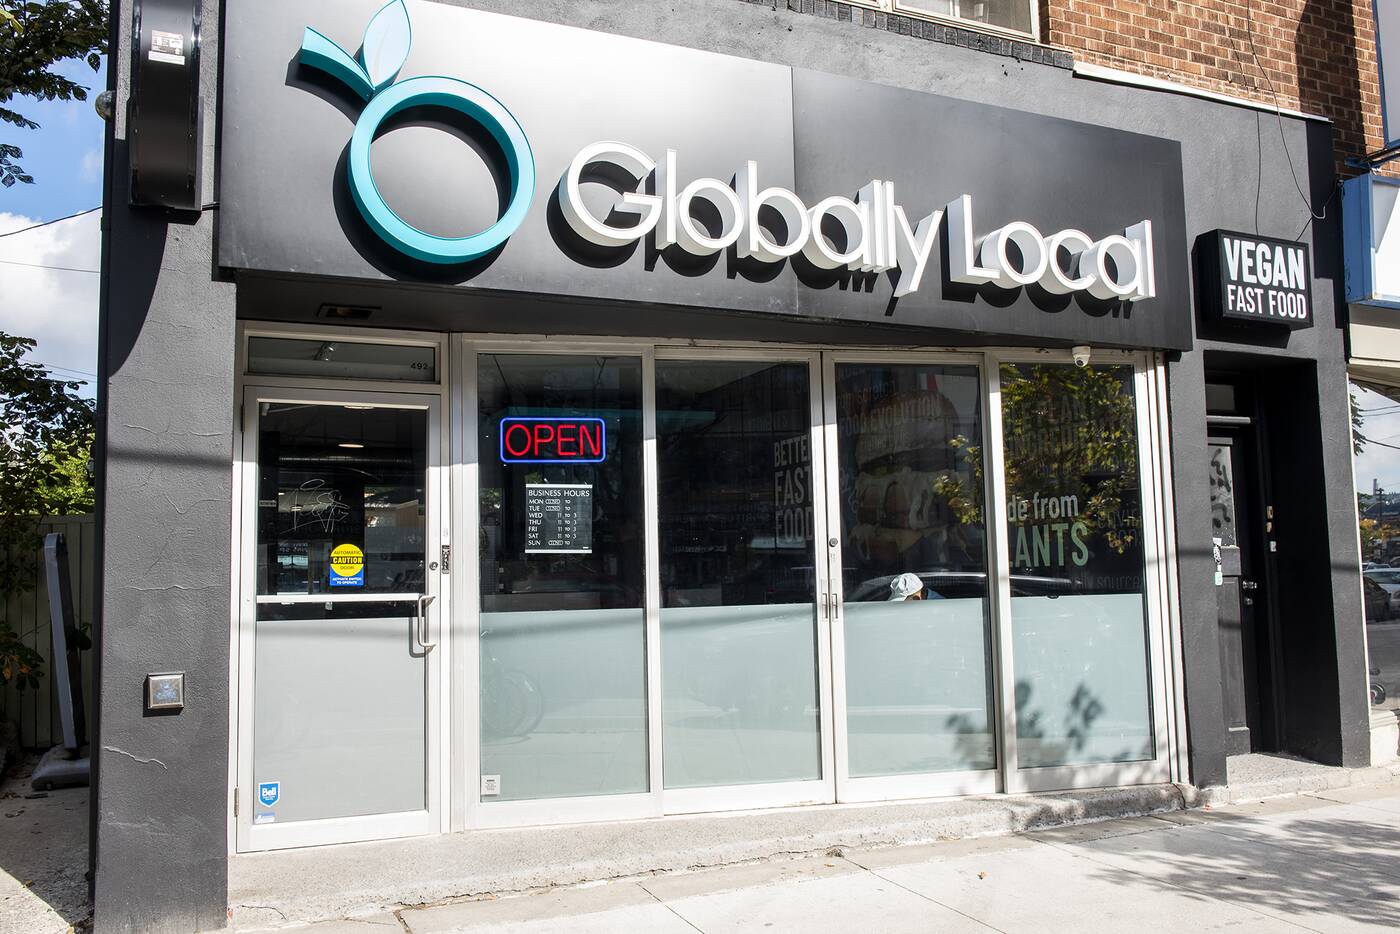 Globally Local Toronto